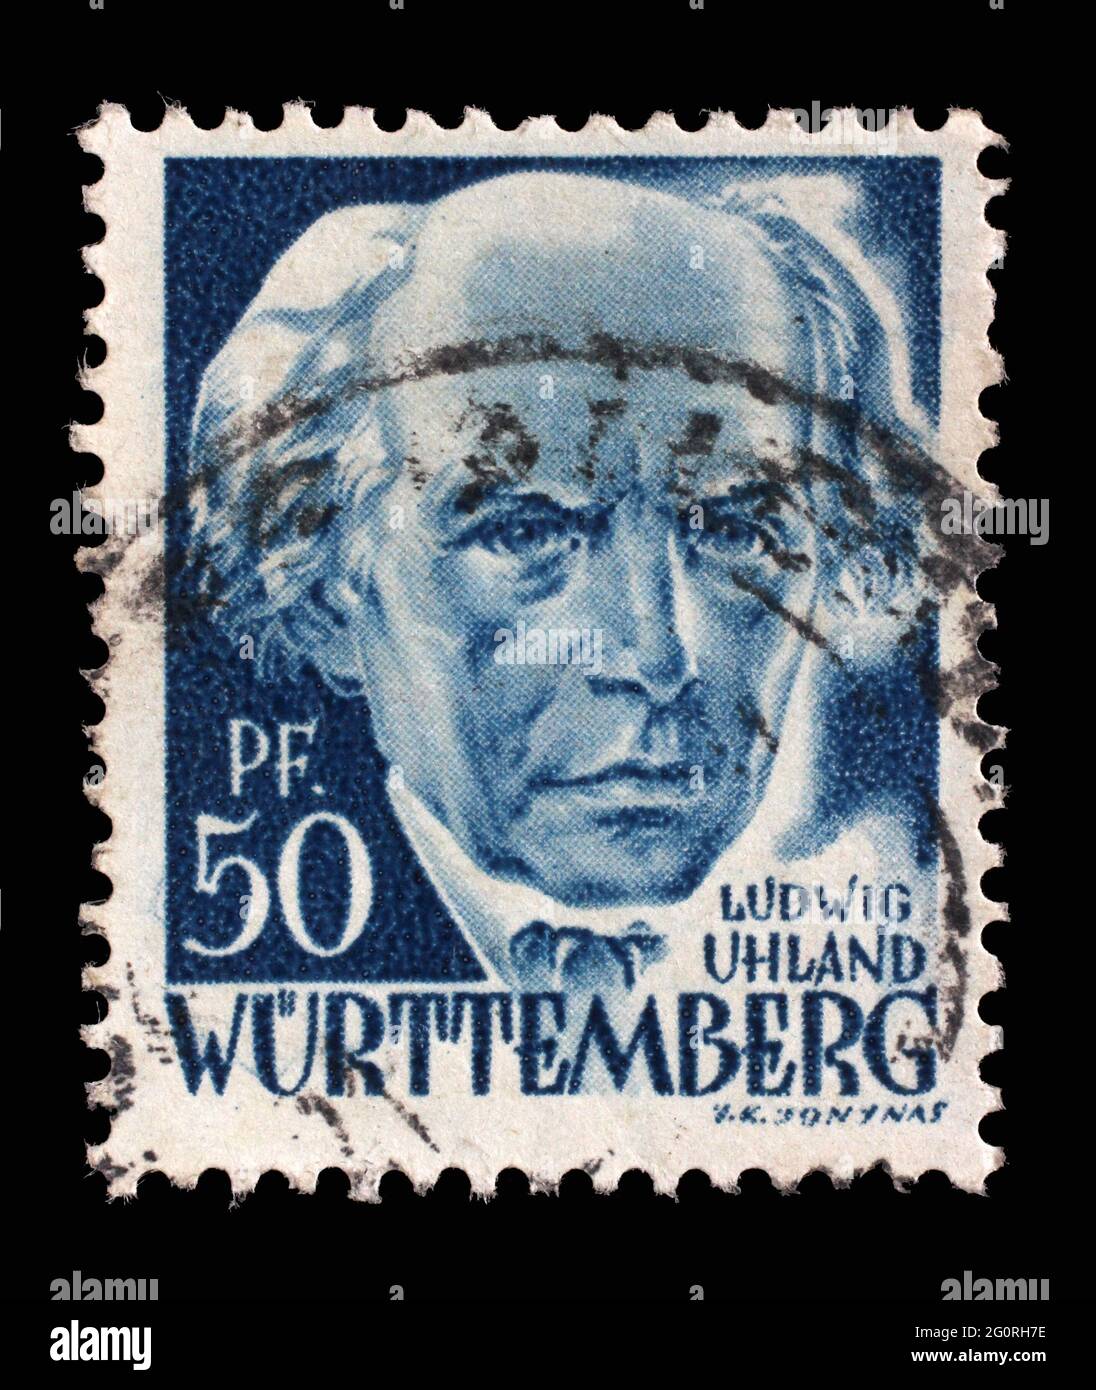 Die in Deutschland gedruckte, französische Besetzung von Württemberg zeigt Ludwig Uhland, Dichter, Philologe und Literaturhistoriker, um 1948 Stockfoto